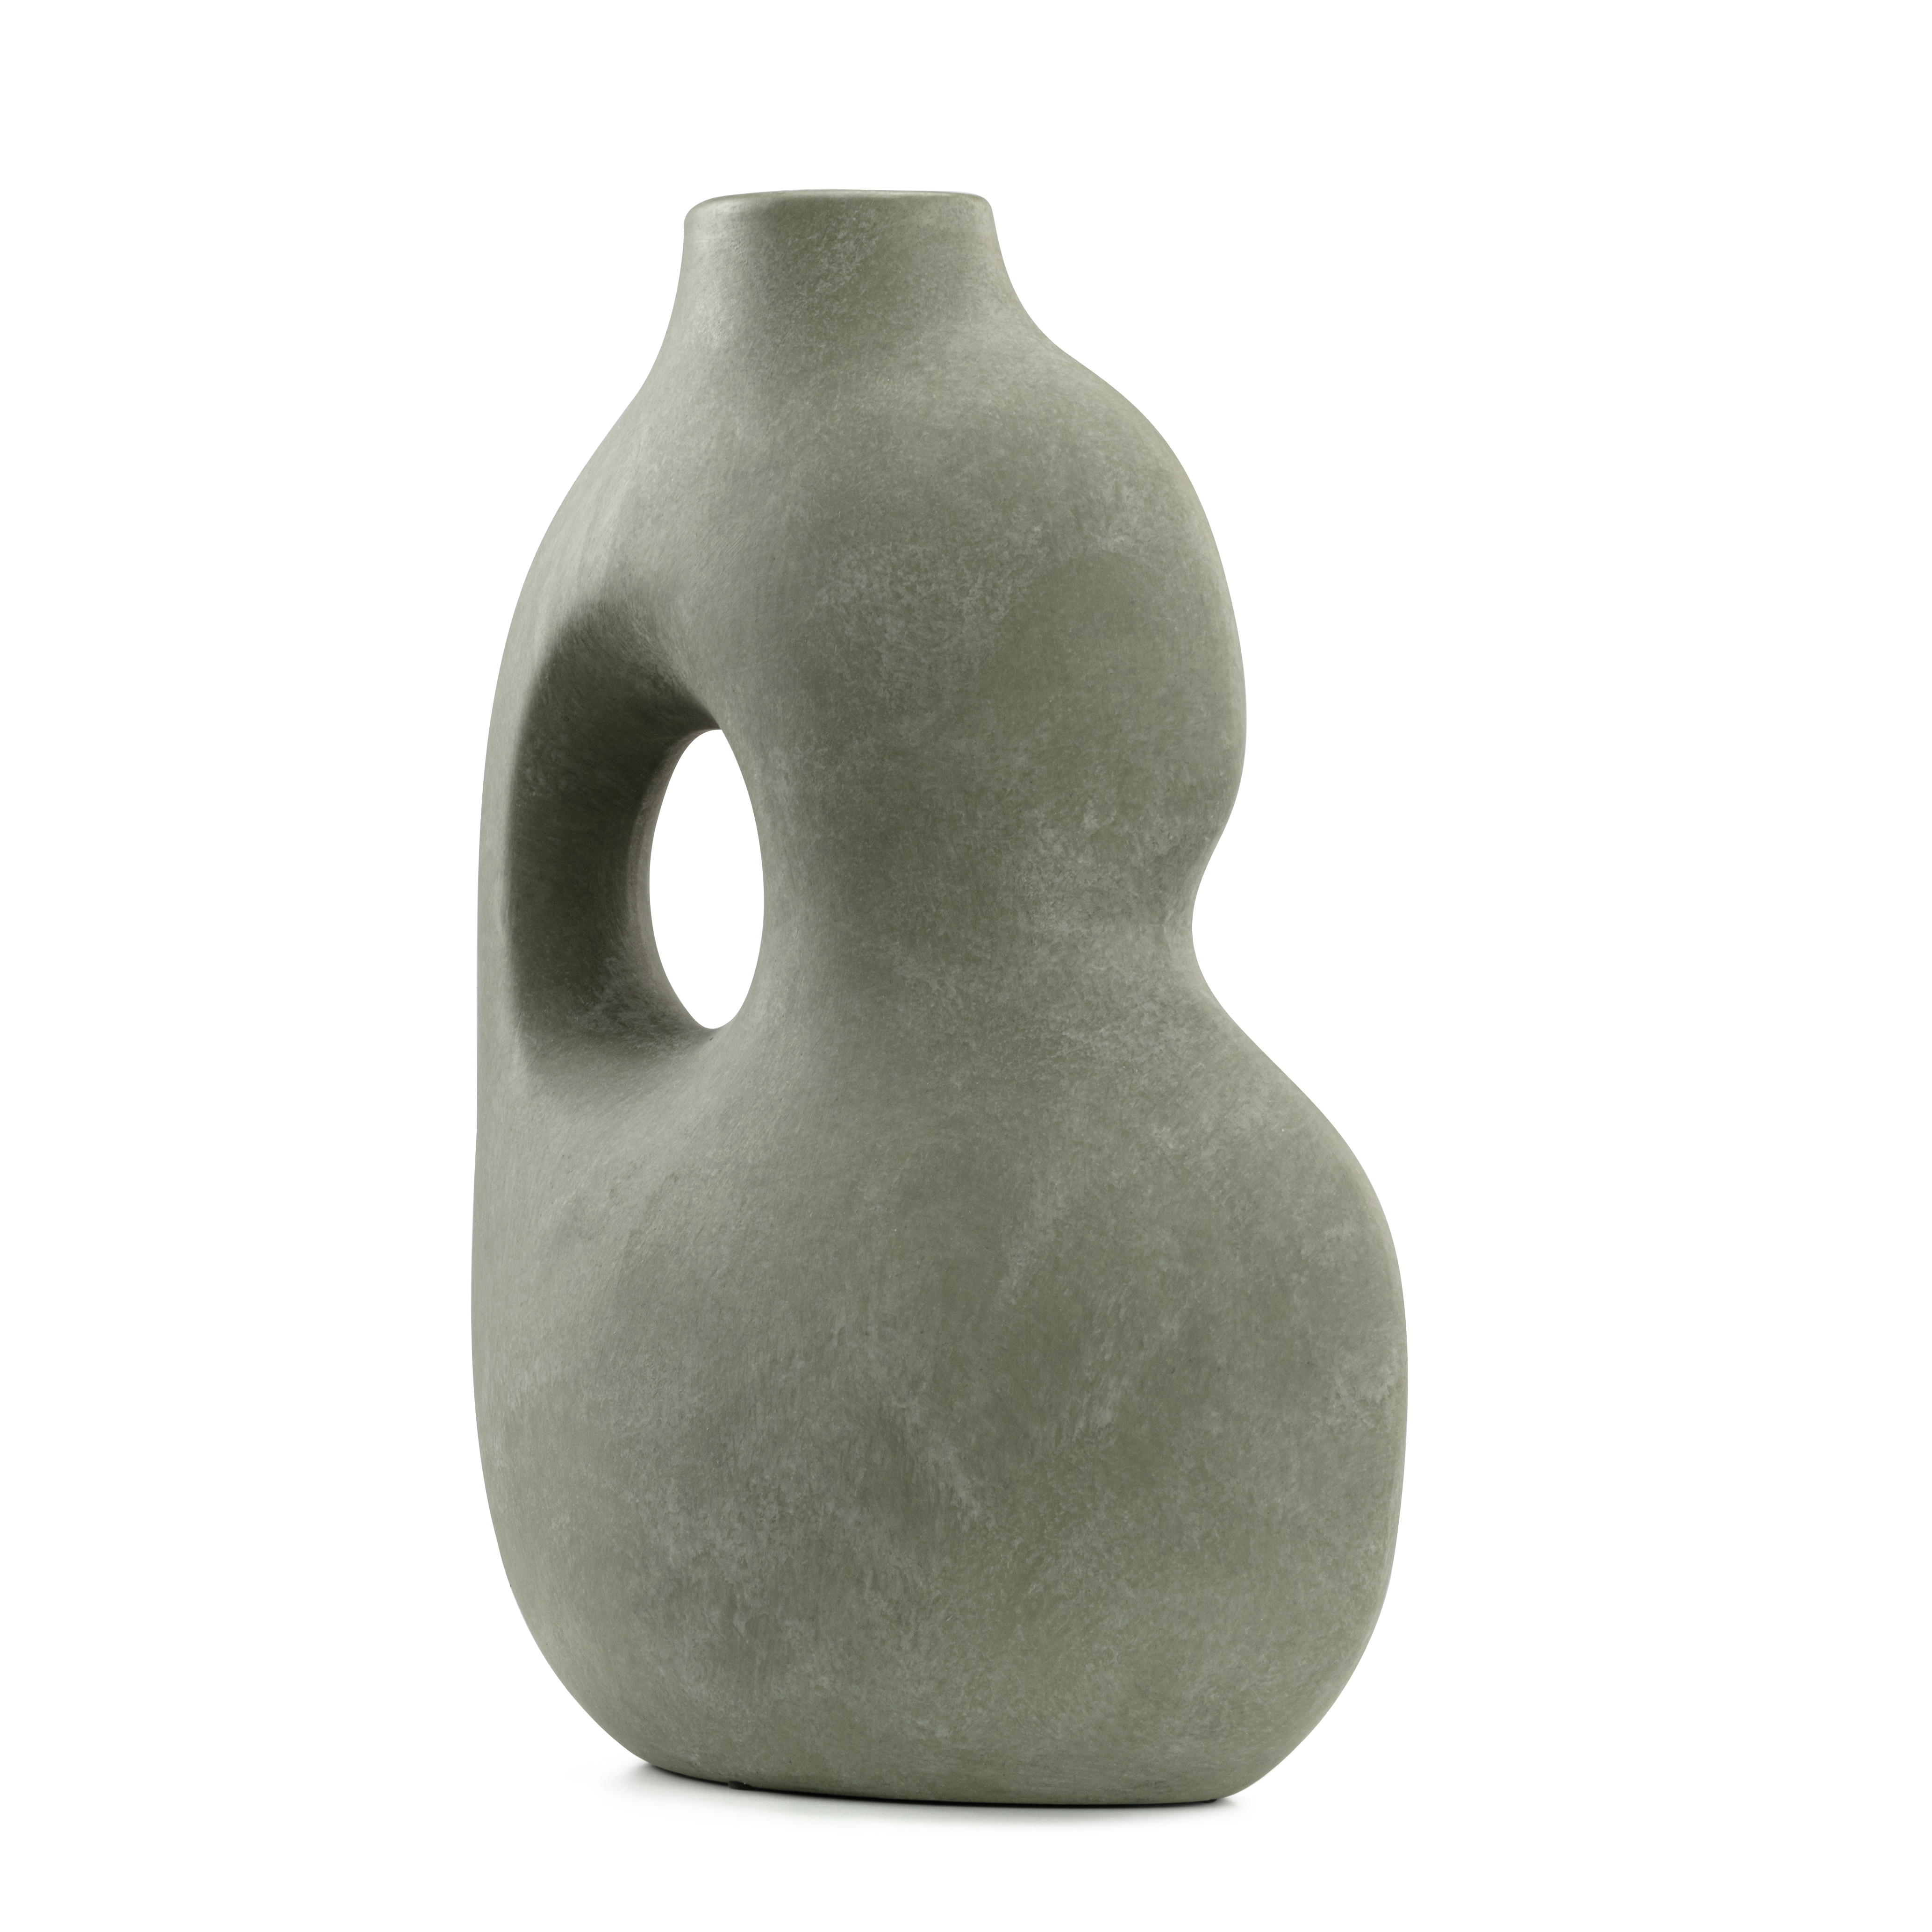 Willow Decorative Sculptural Faded Earth Grey Rustic Wabi Sabi Ceramic Vase - Dark Ash